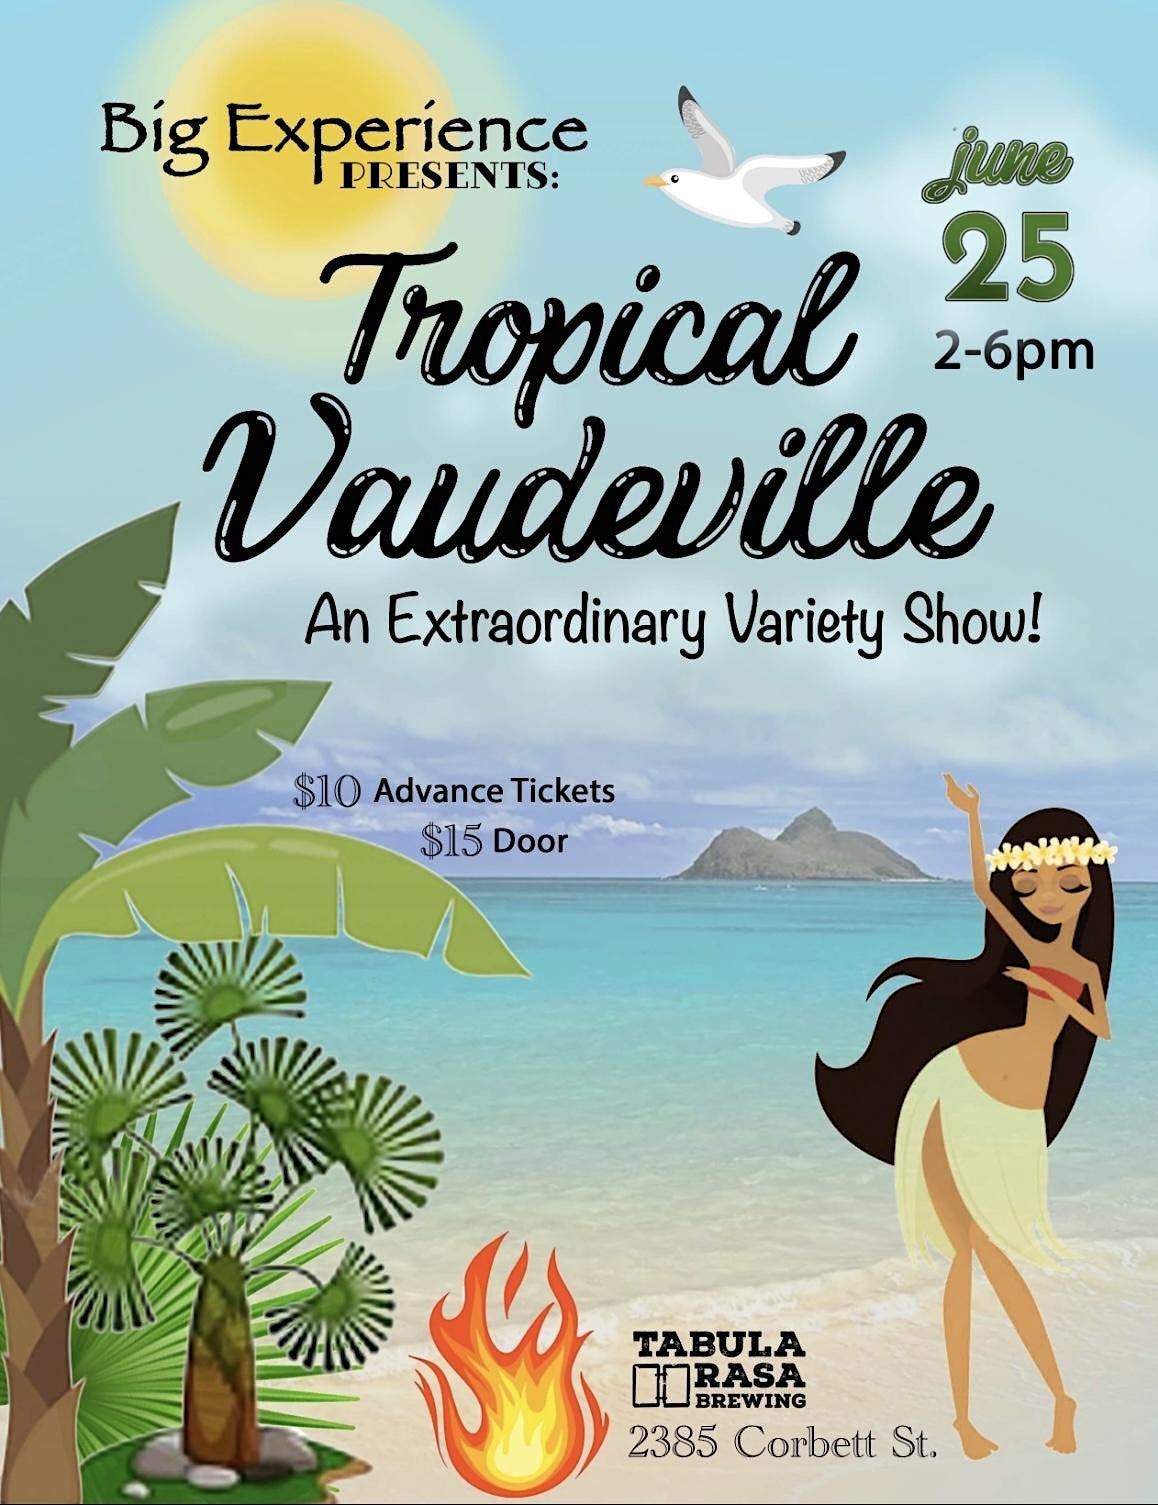 Tropical Vaudeville